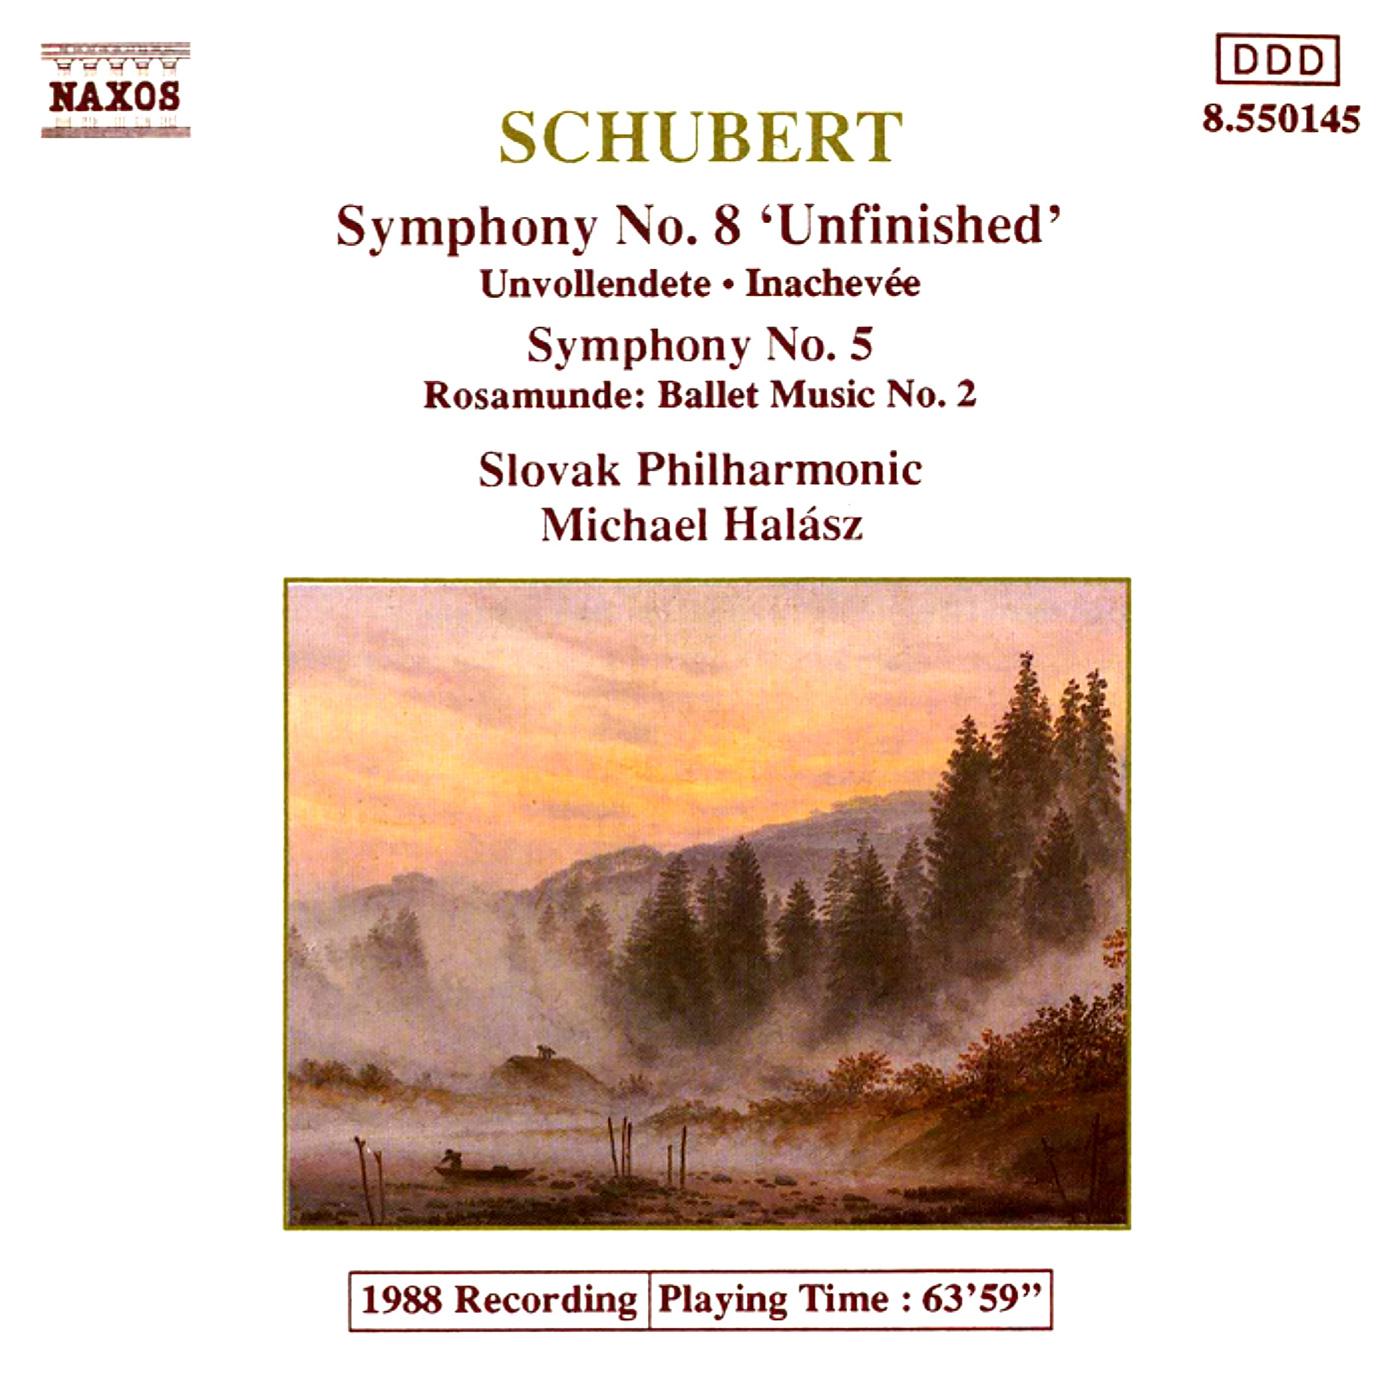 SCHUBERT: Symphonies Nos. 5 and 8 / Rosamunde